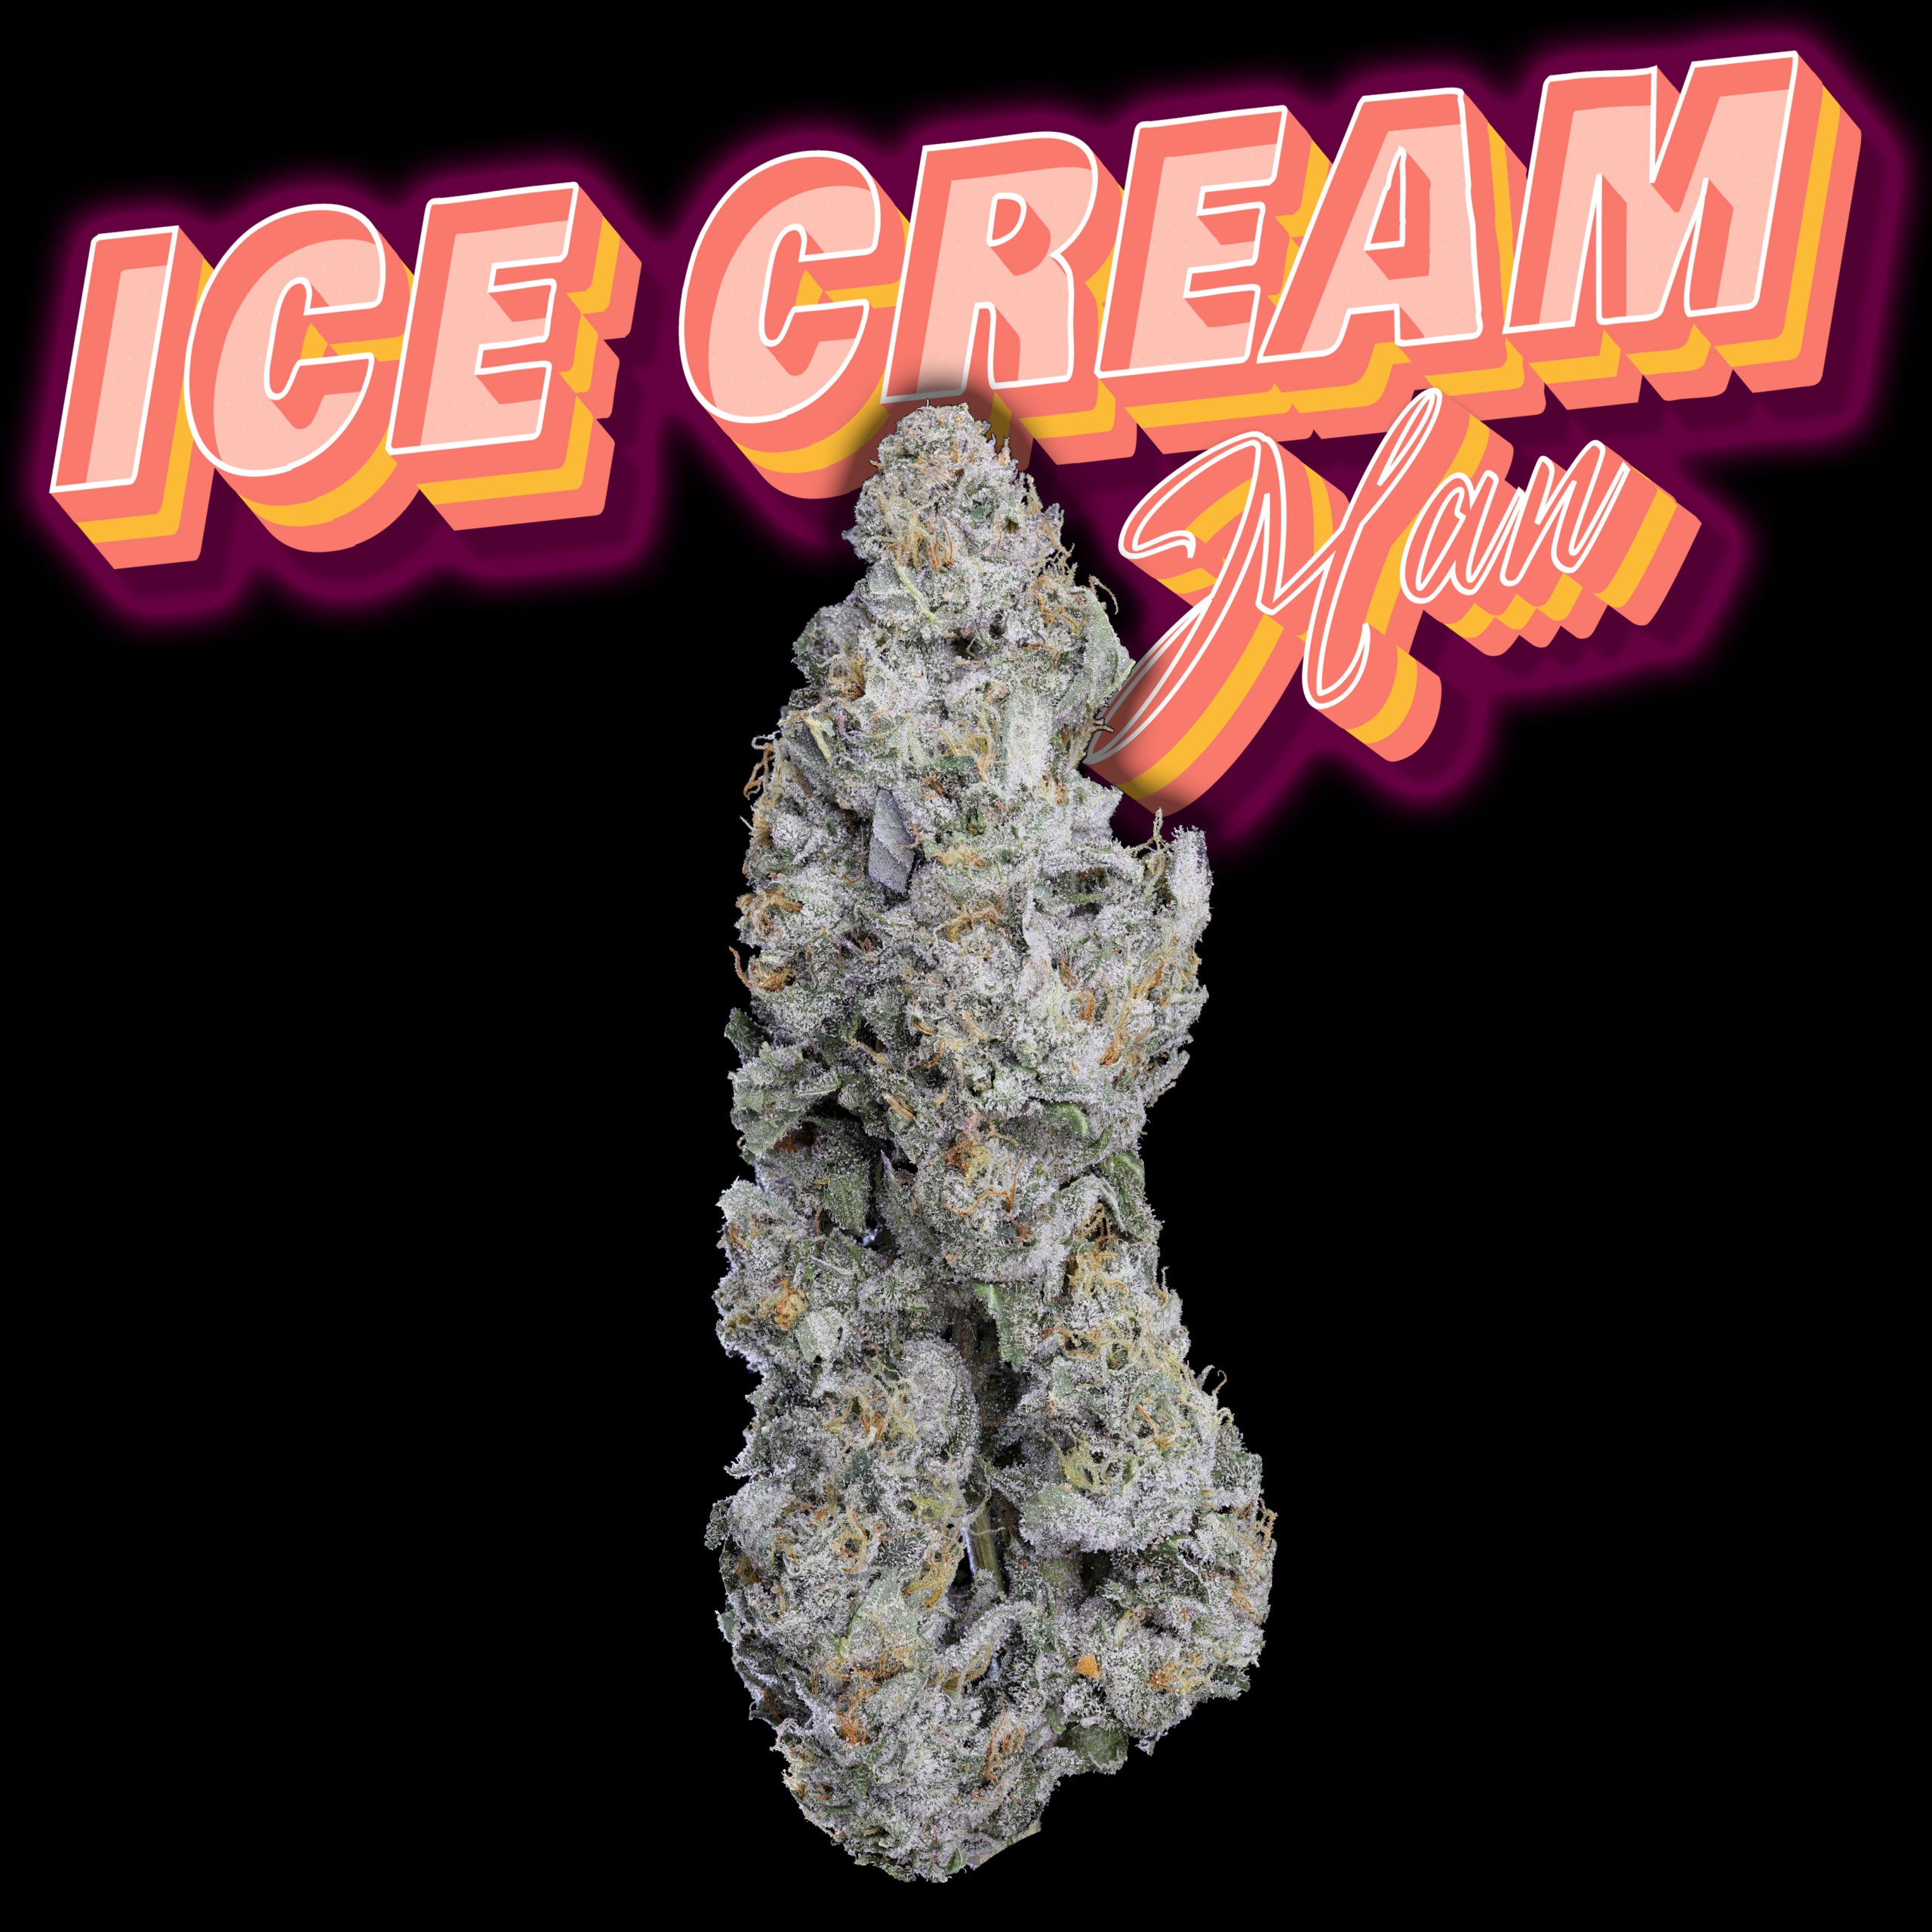 Ice Cream Man Thumbnail